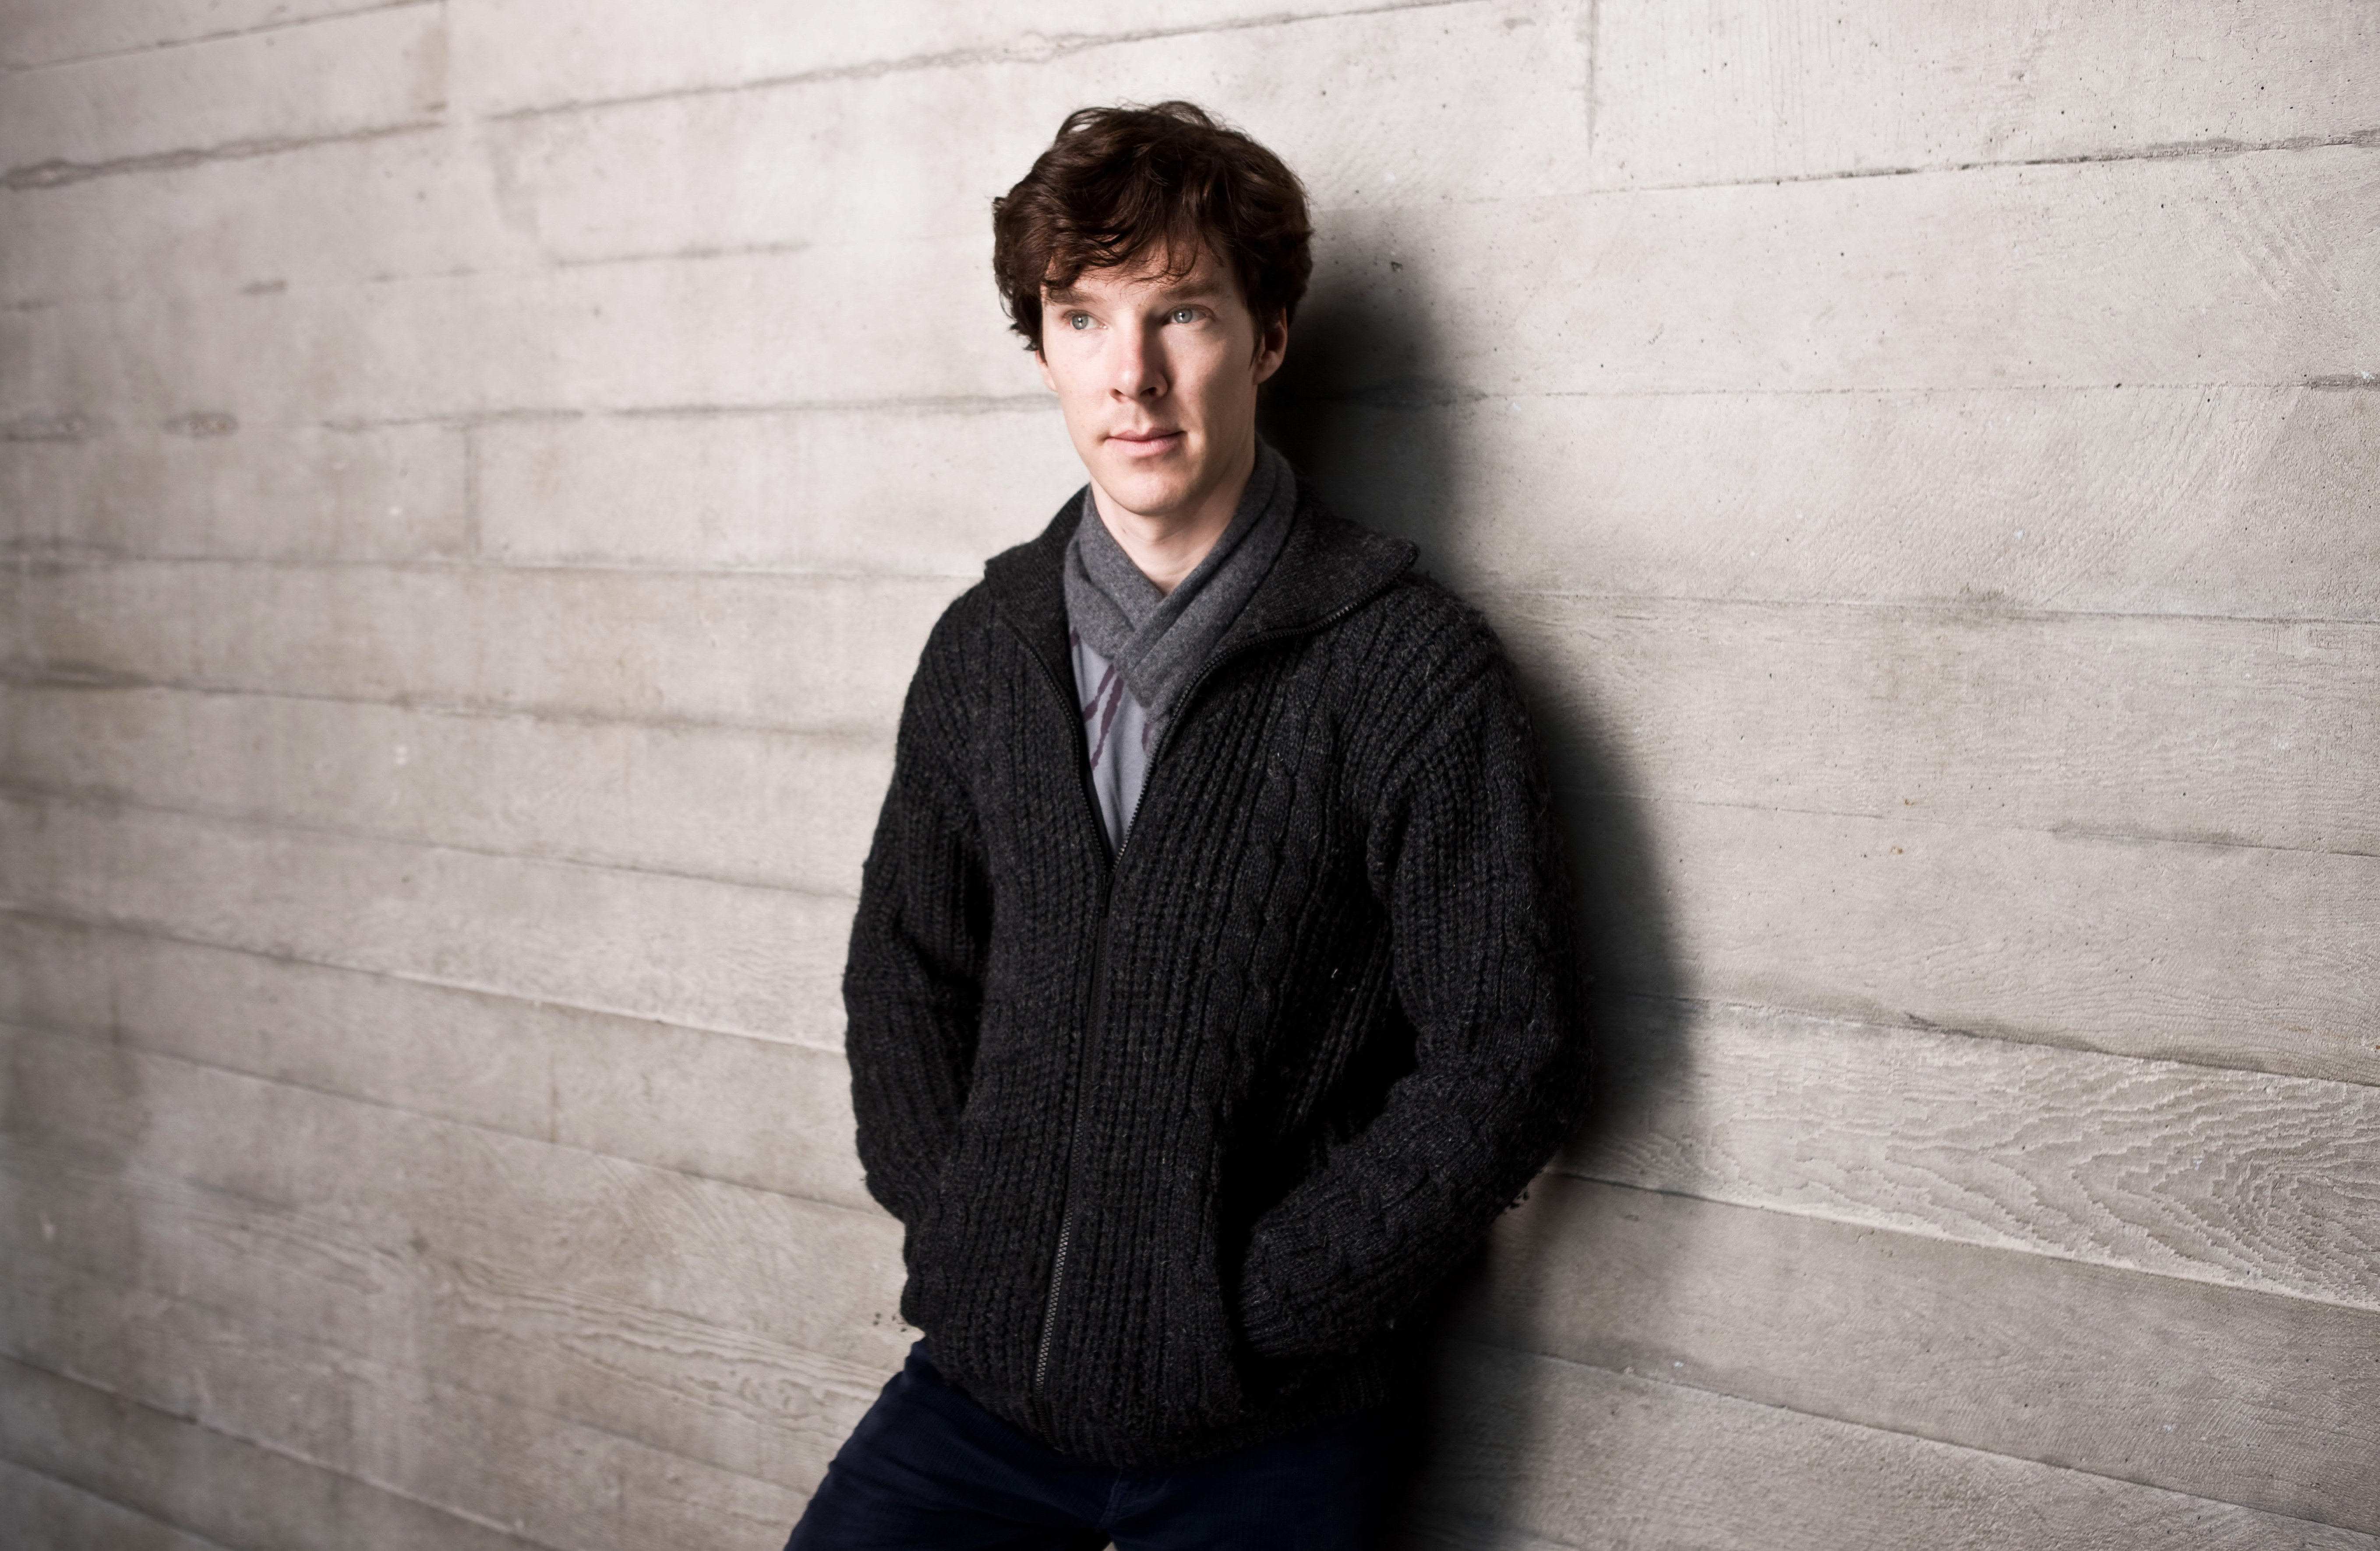 Benedict Cumberbatch Wallpaper Pictures Image